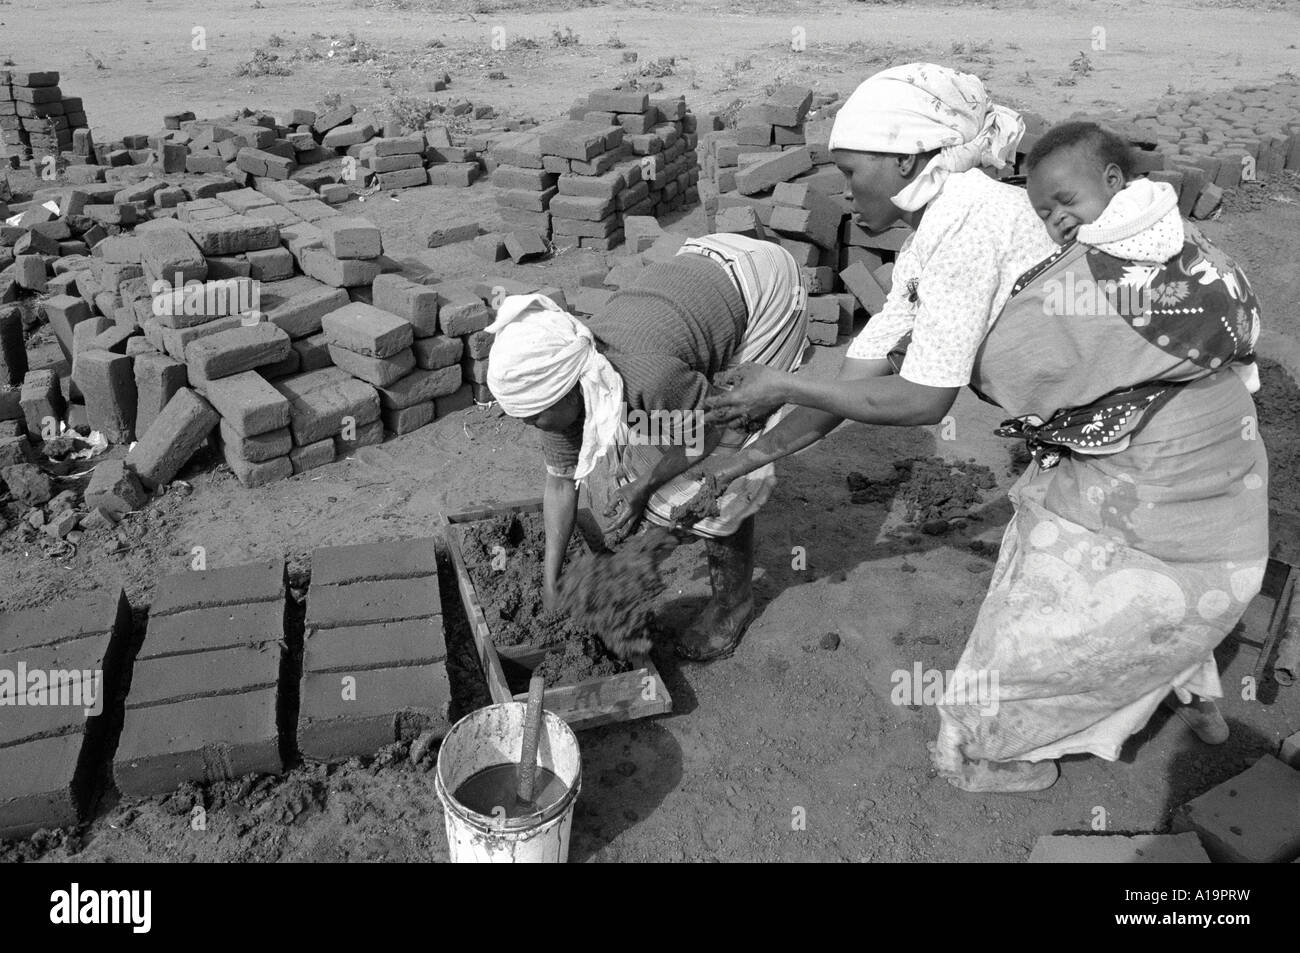 B/W von Rückkehrern von Flüchtlingen, die während des Bürgerkrieges nach Simbabwe geflohen waren, um ihre Häuser in einem friedlichen, besiedelten Mosambik wieder aufzubauen Stockfoto